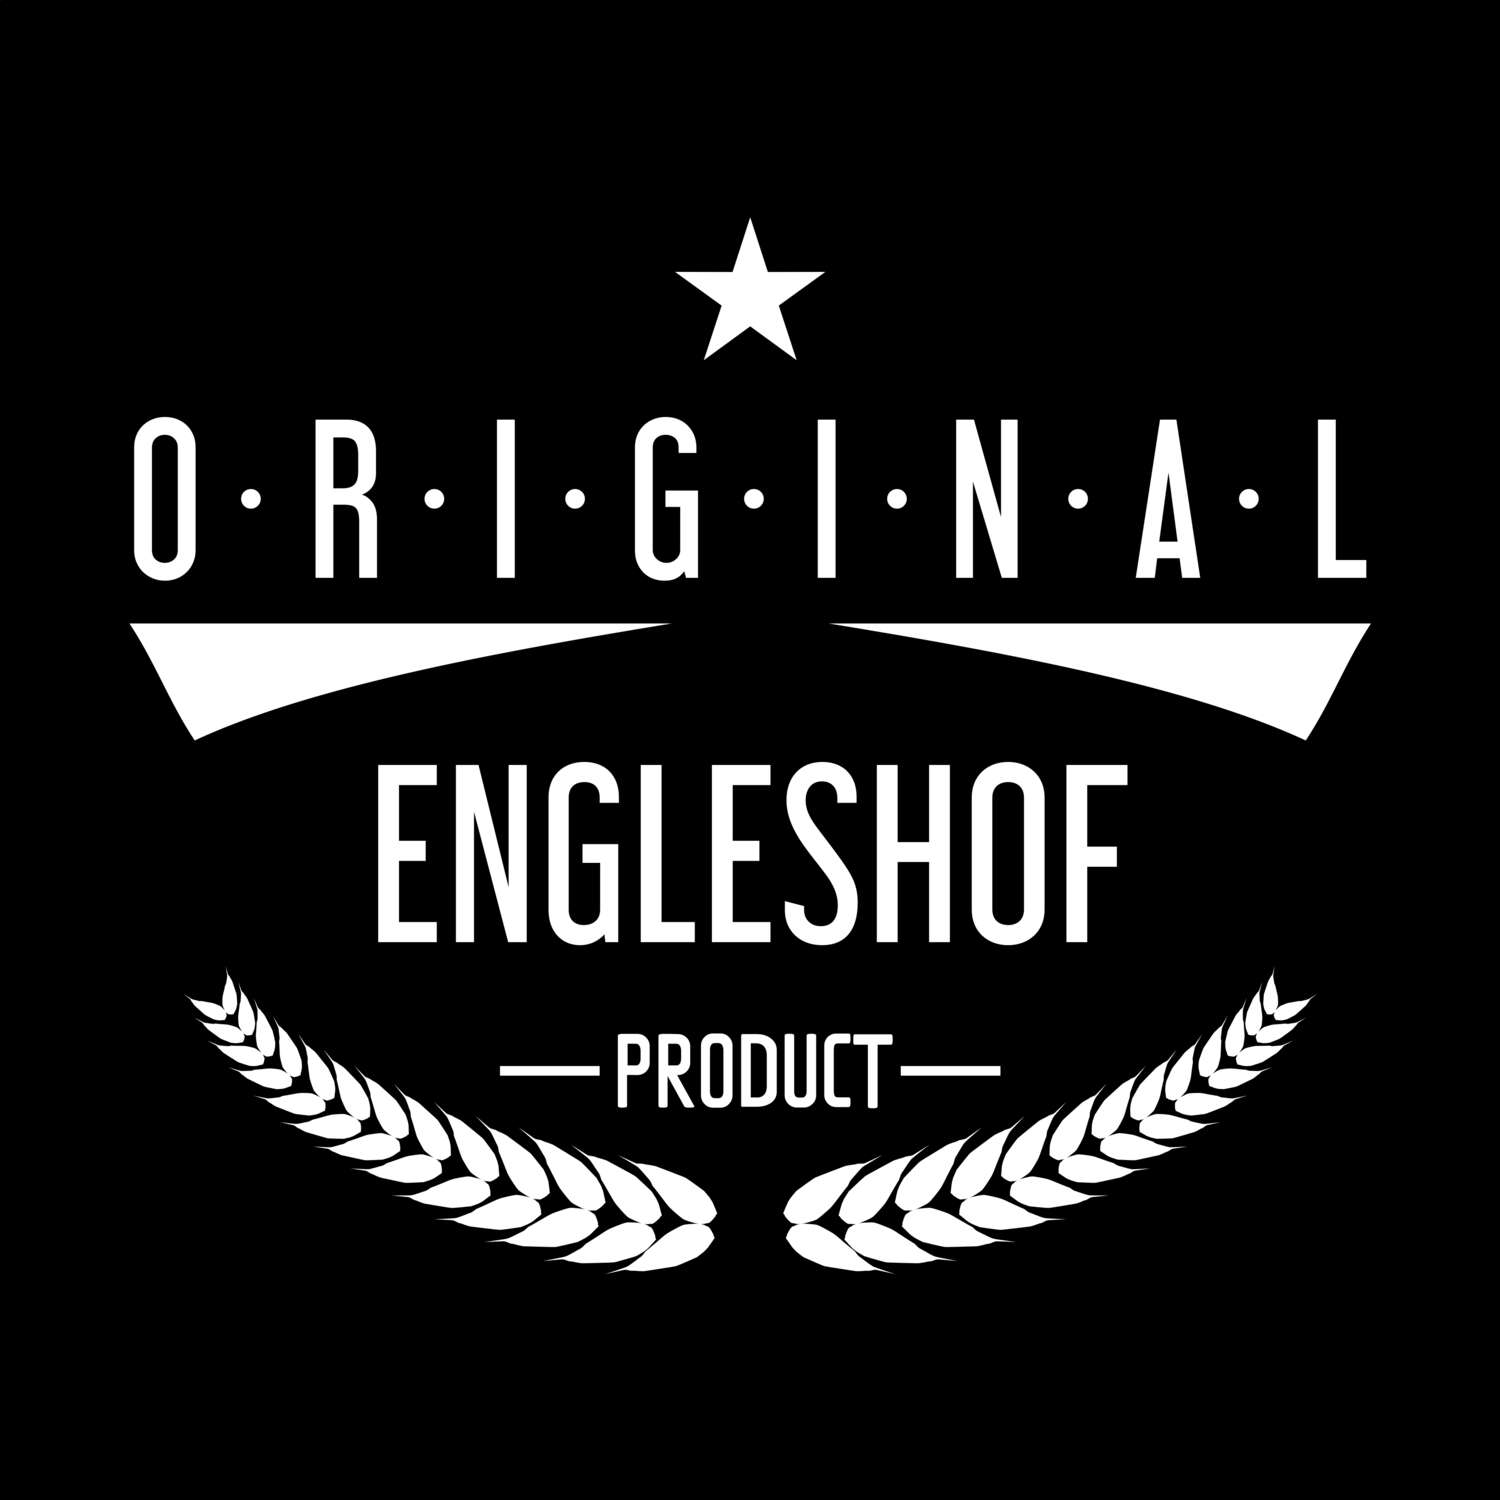 Engleshof T-Shirt »Original Product«